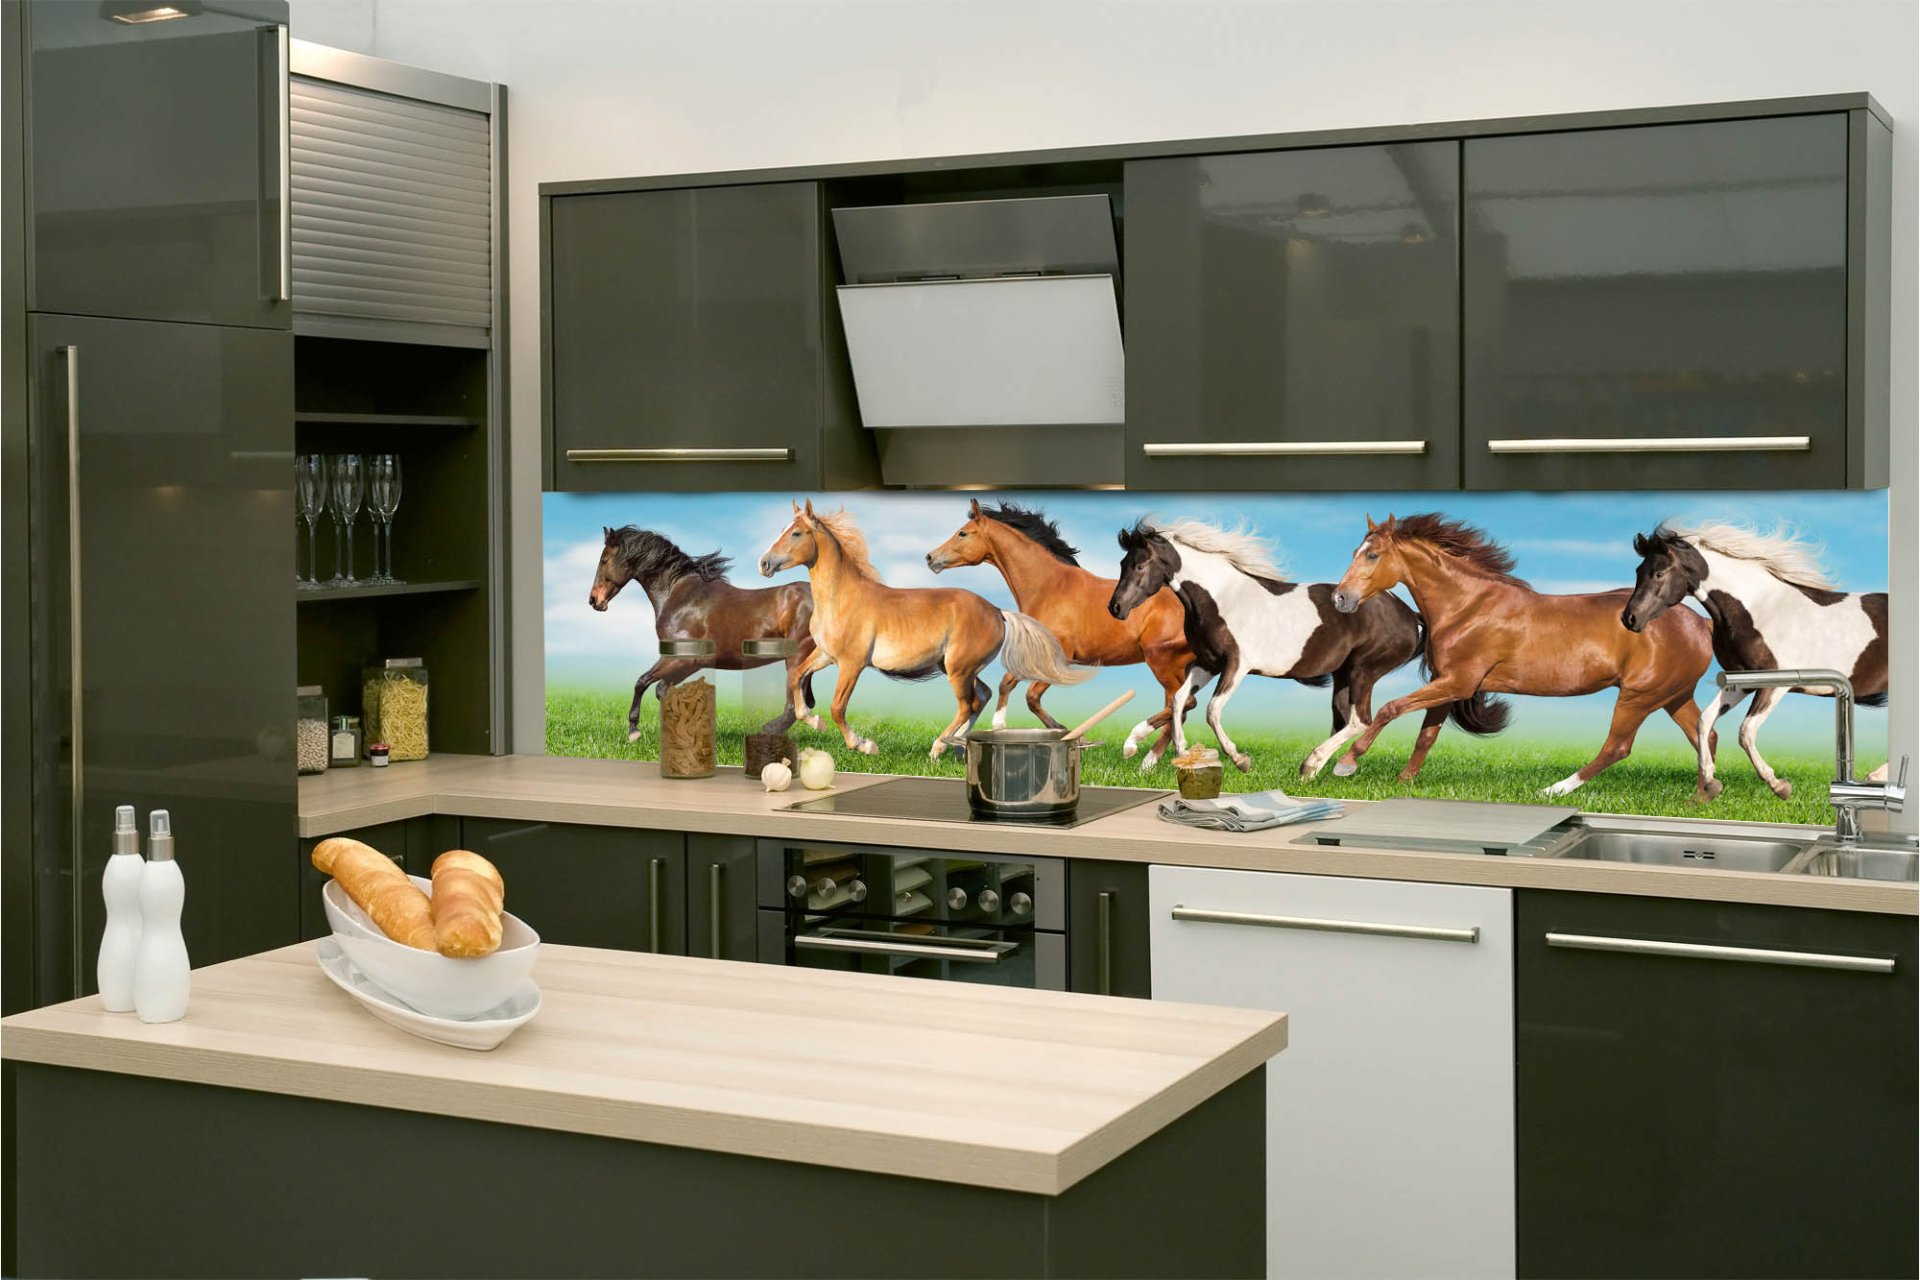 Samolepicí fototapeta na kuchyňskou linku Stádo koní, koně KI-260-111 / Fototapety do kuchyně Dimex (260 x 60 cm)